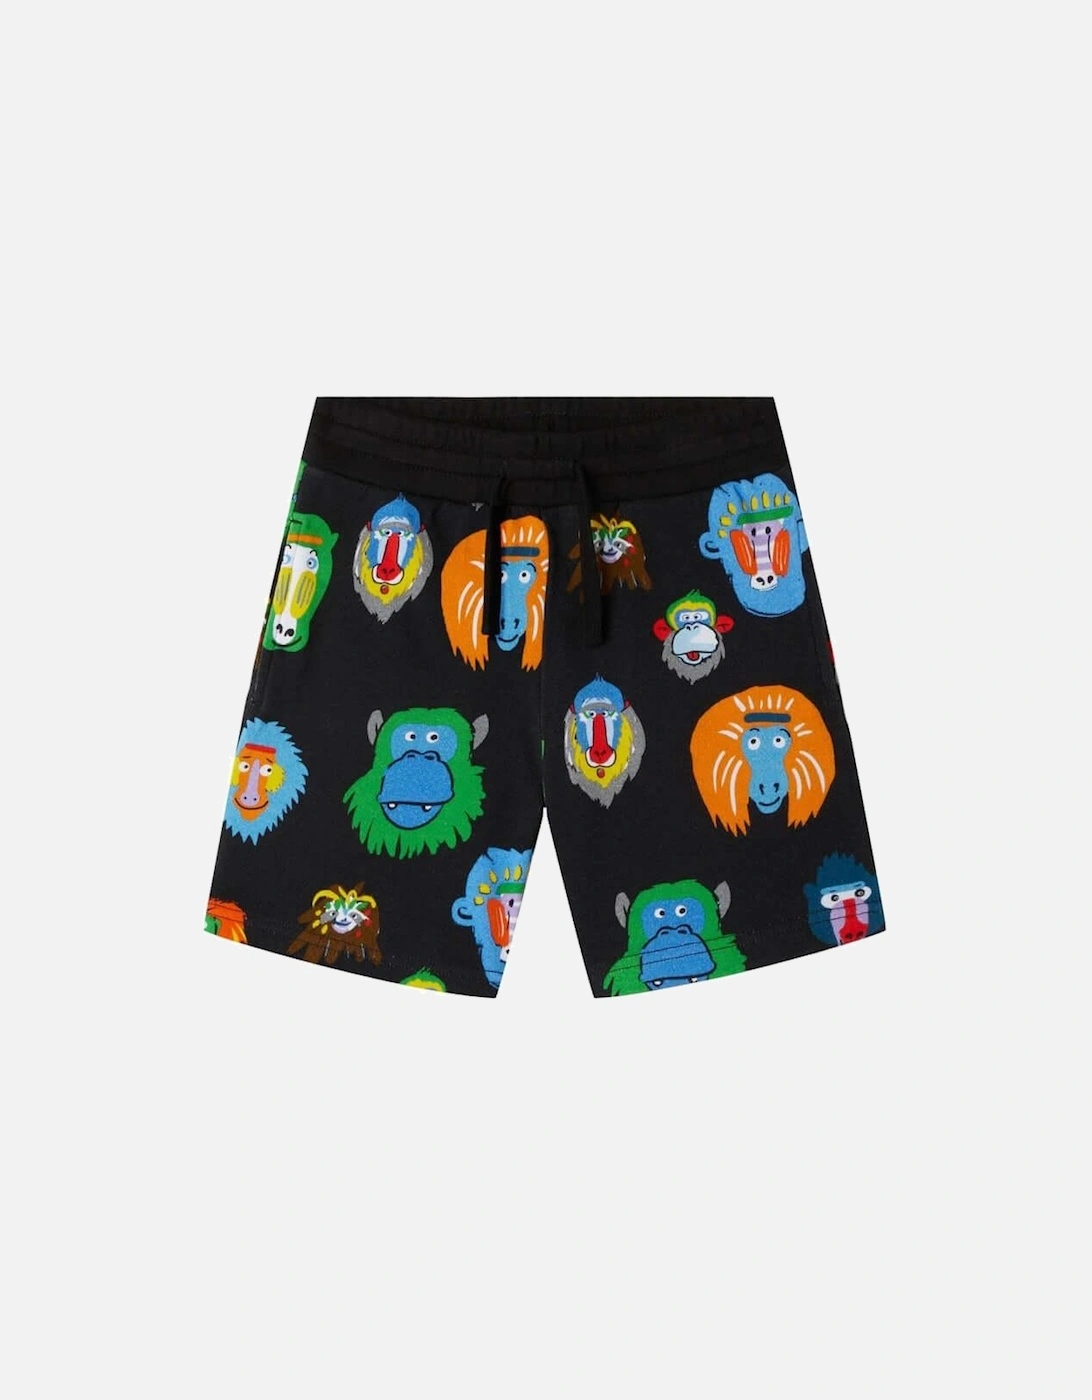 Boys Black Monkey Print Shorts, 2 of 1